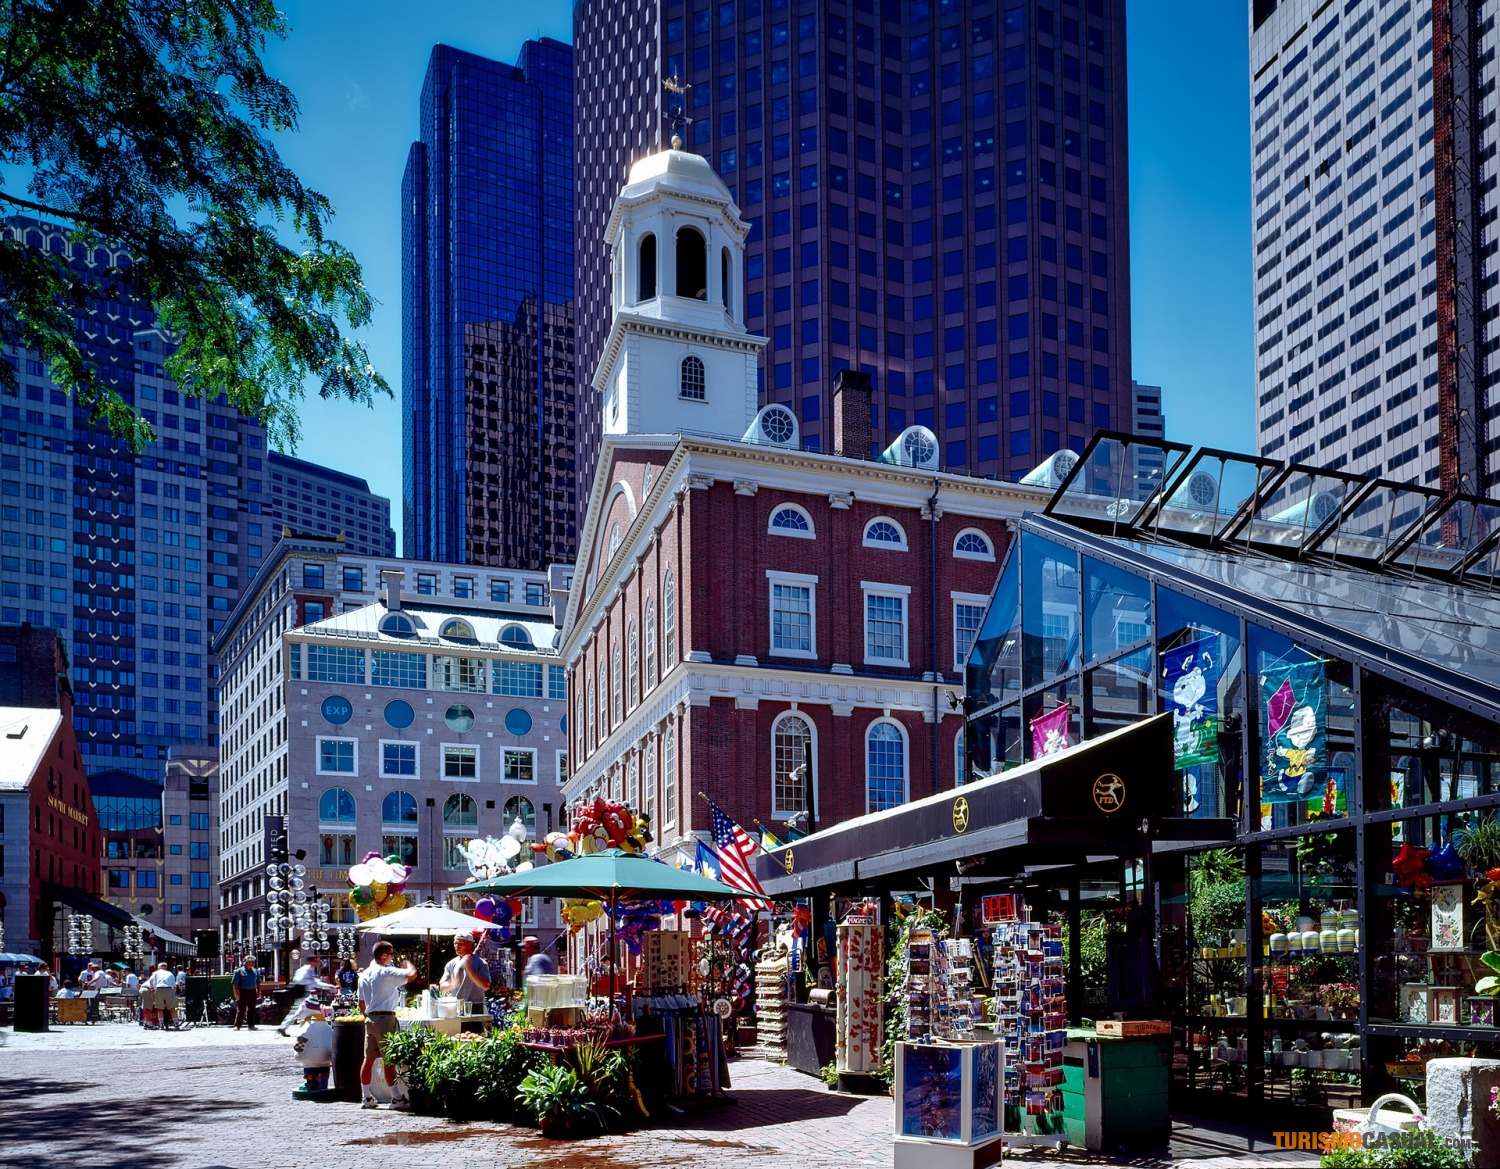 Qué lugares turísticos visitar en Boston